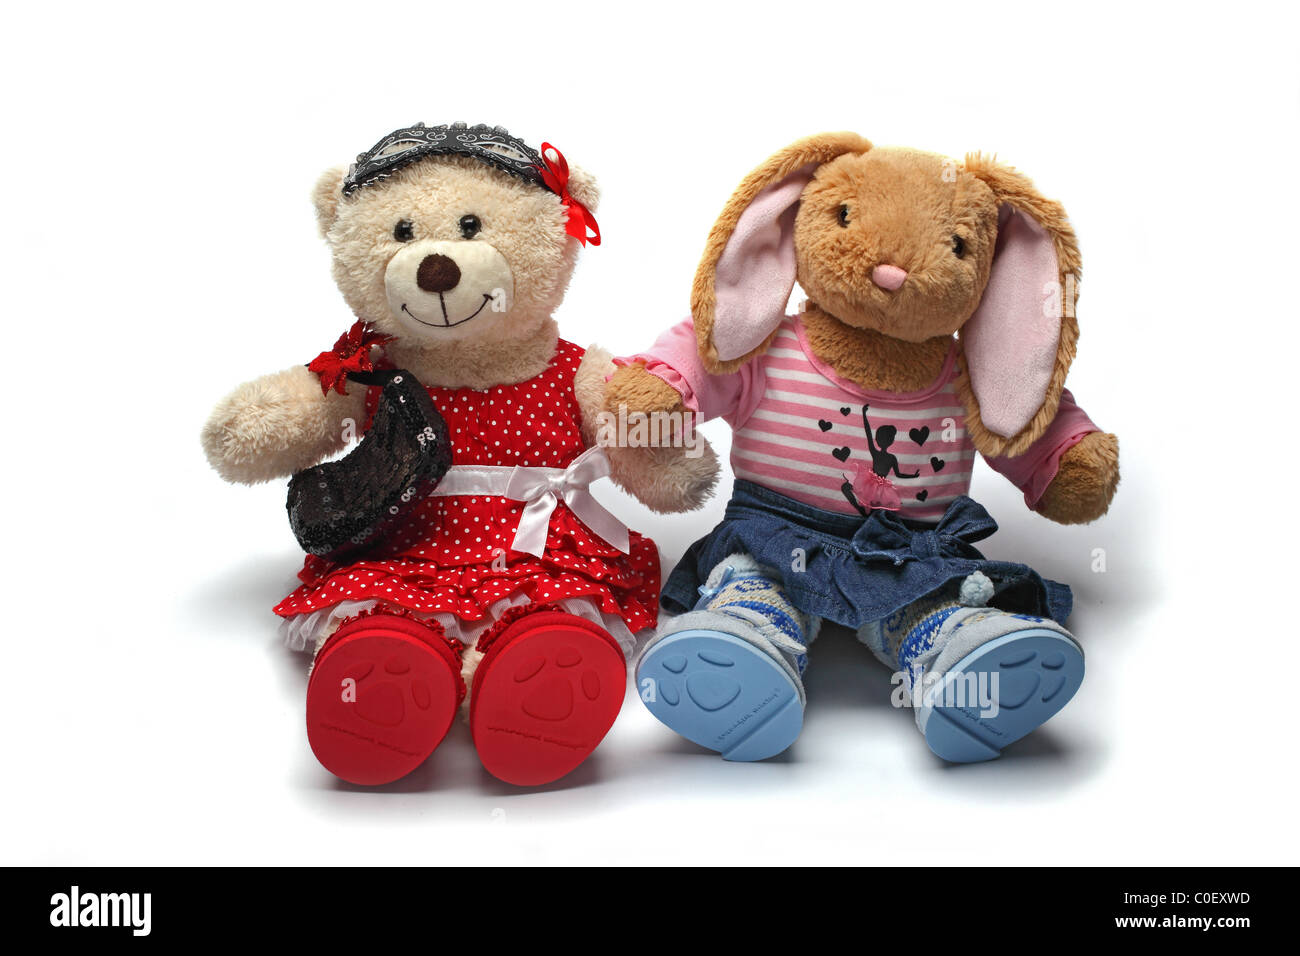 Build A Bear stuffed toys Stock Photo